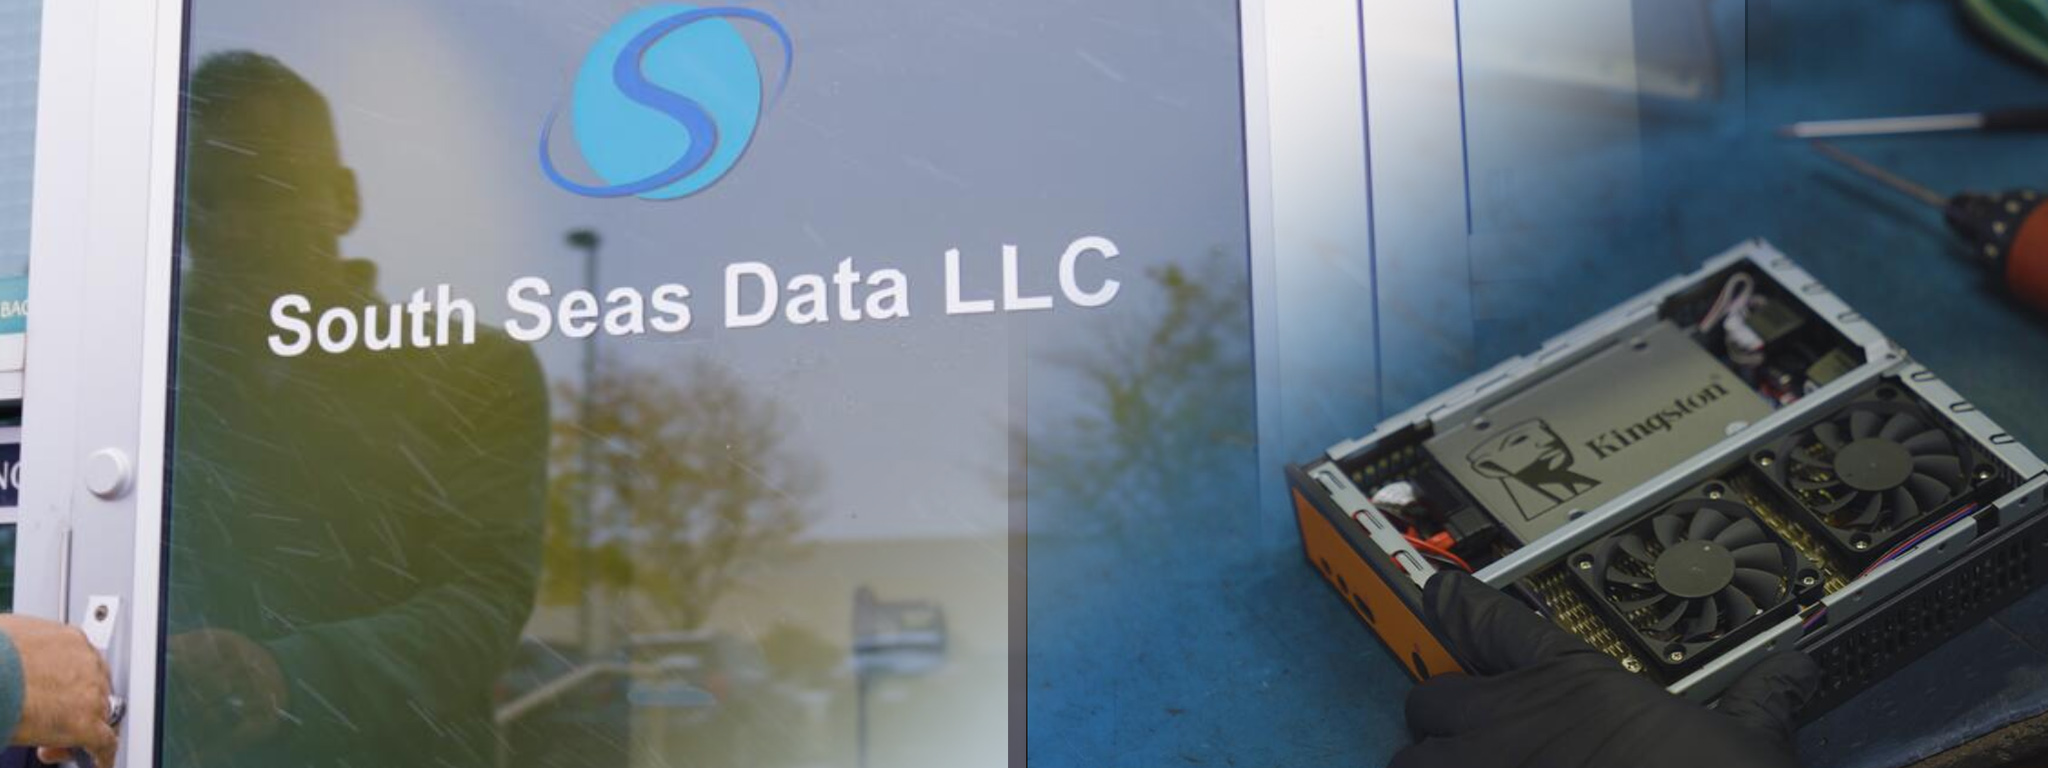 Drzwi wejściowe do siedziby firmy South Seas Data LLC oraz nałożony obraz komputera z wyraźnie widocznym dyskiem SSD Kingston.